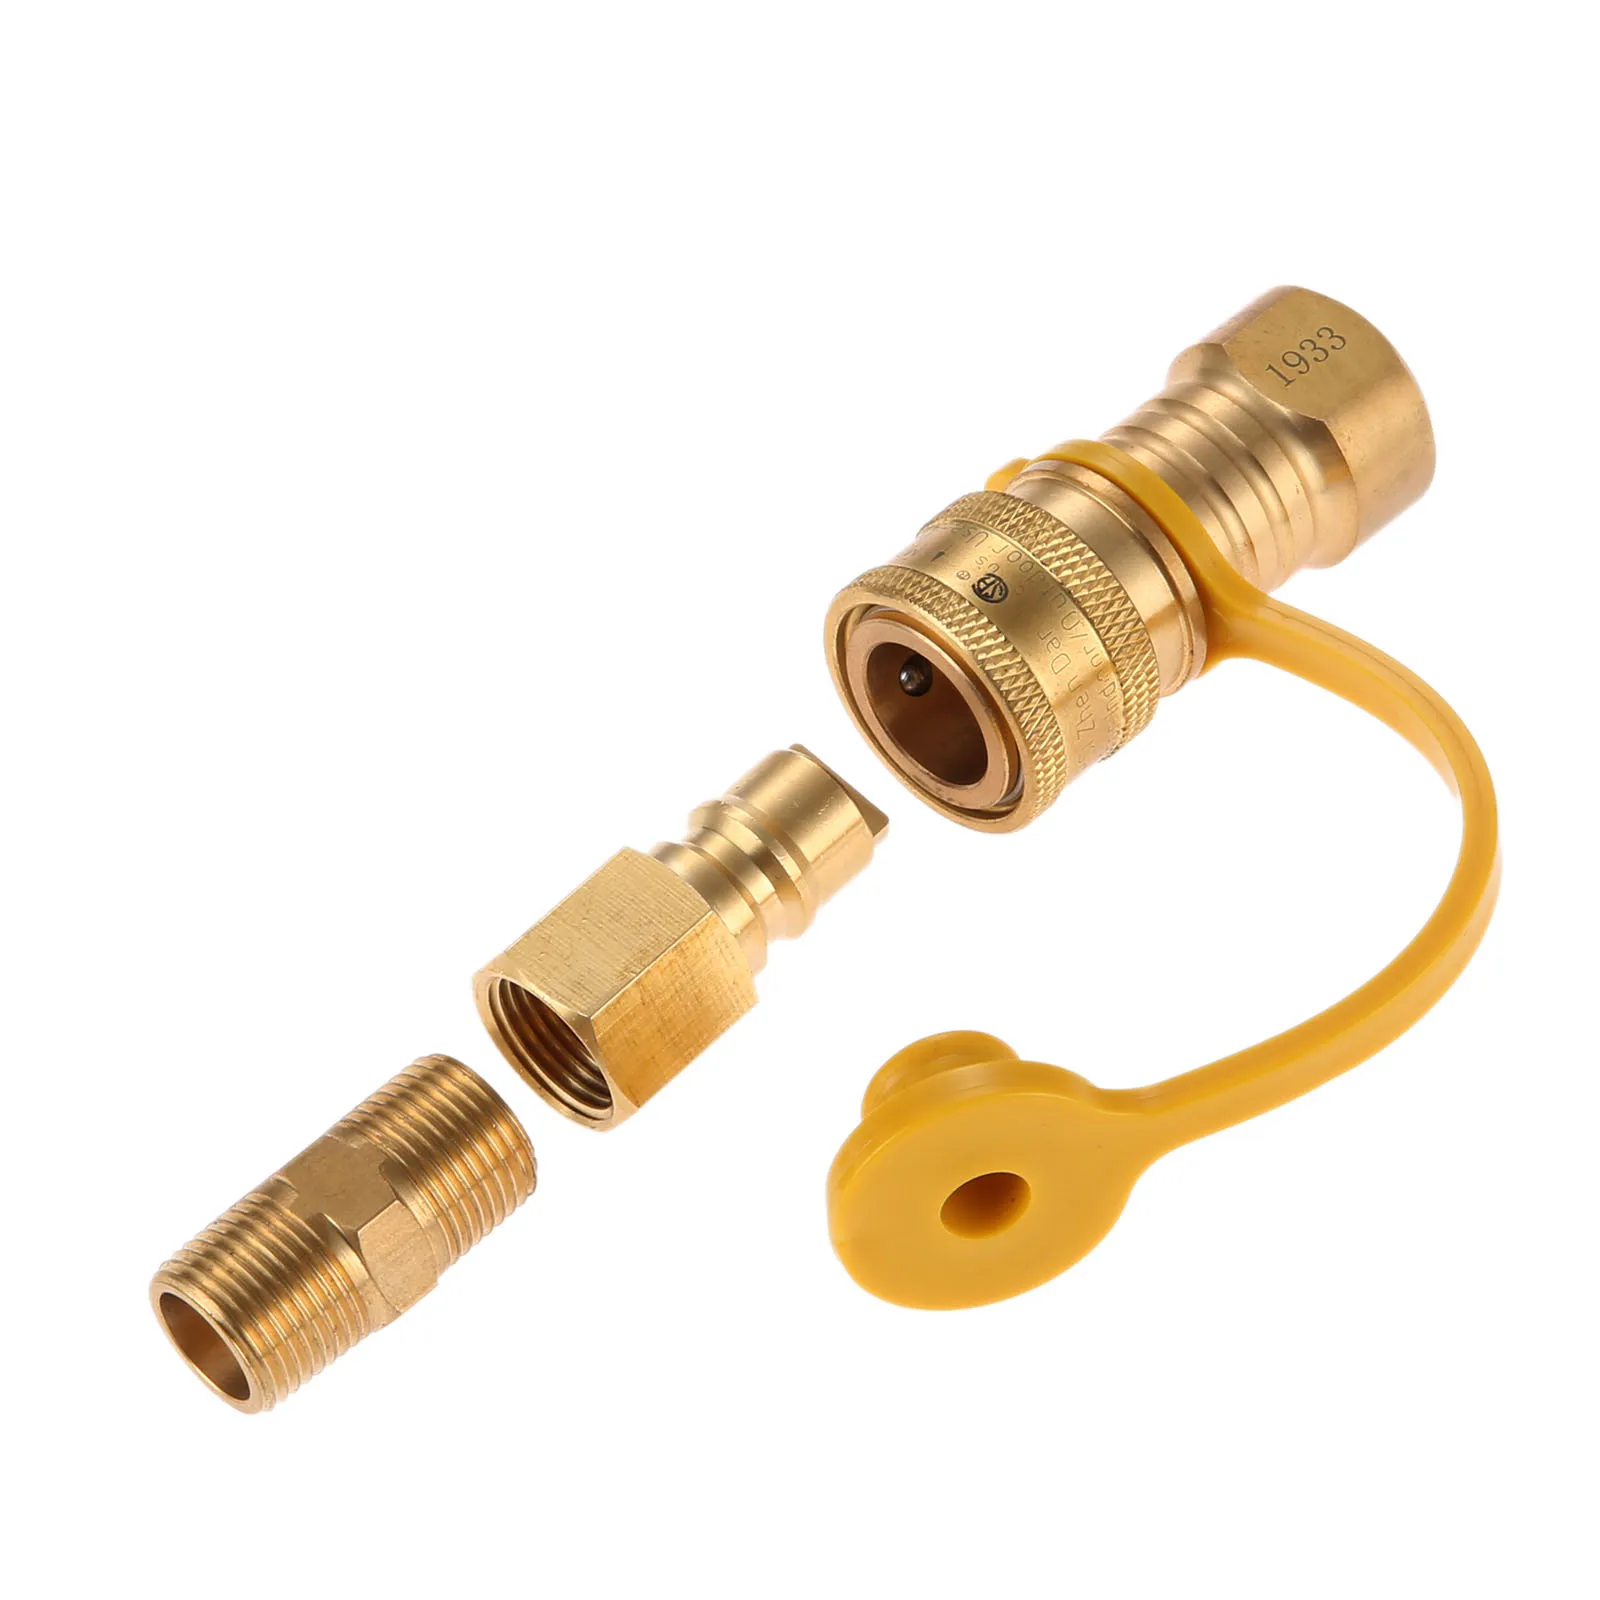 Gas Verbinder Adapter Schnell Armaturen Propan Schlauch Messing Stecker Elemente 